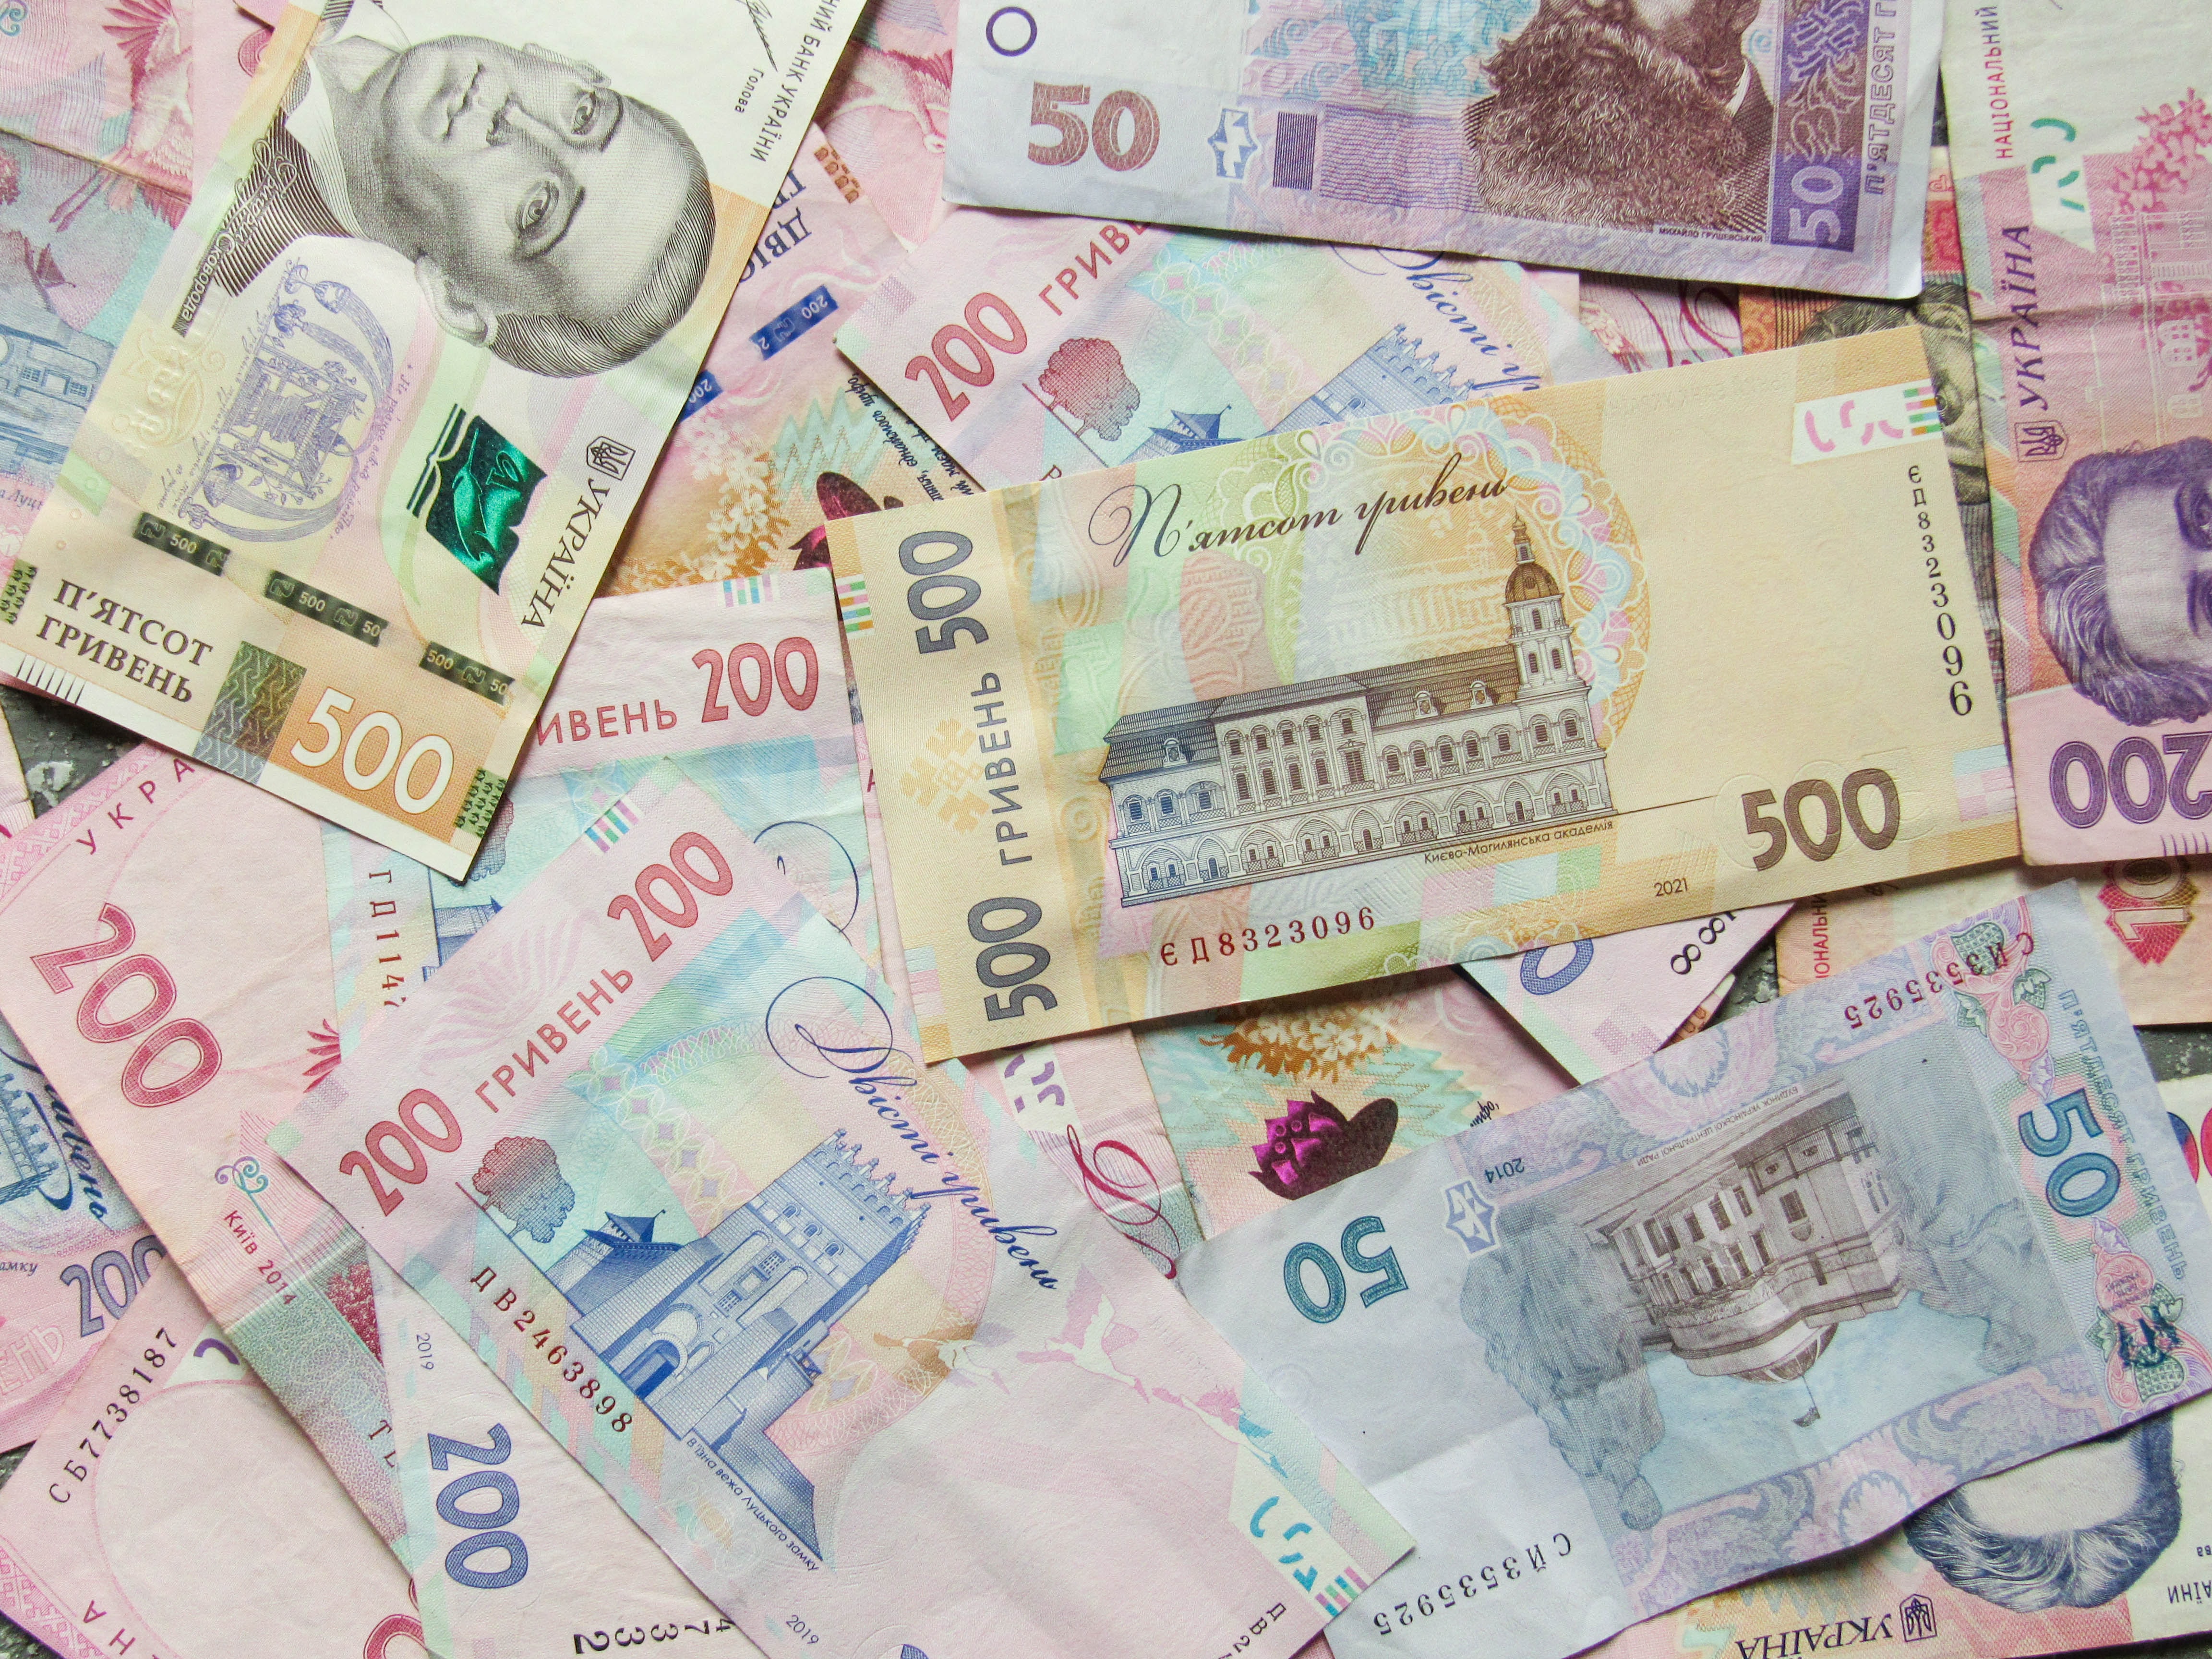 Нацбанк Украины продал рекордное количество валюты для удержания курса гривны